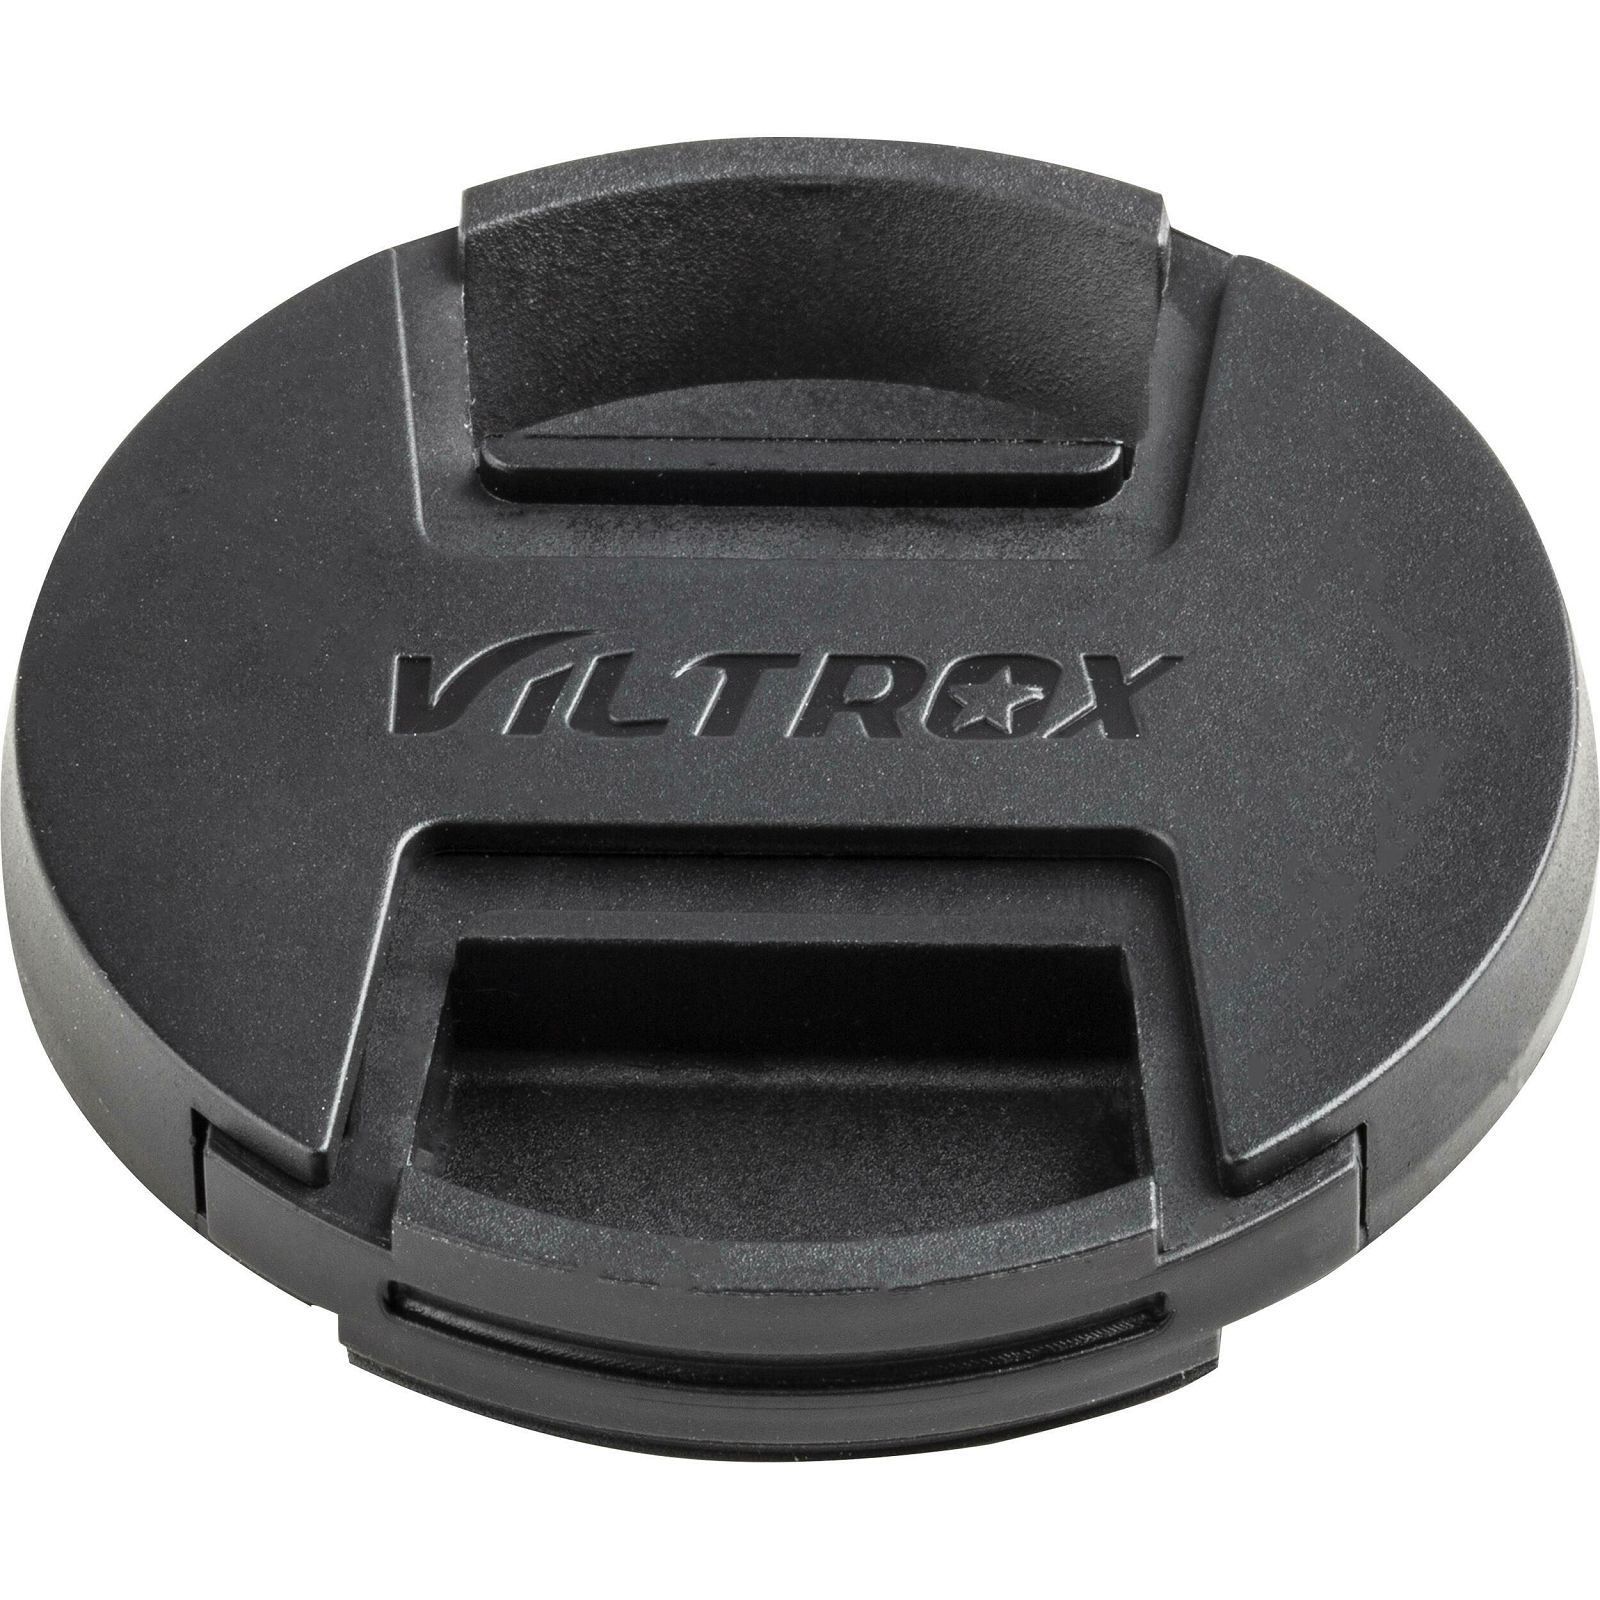 Viltrox AF 33mm f/1.4 Z objektiv za Nikon Z-mount